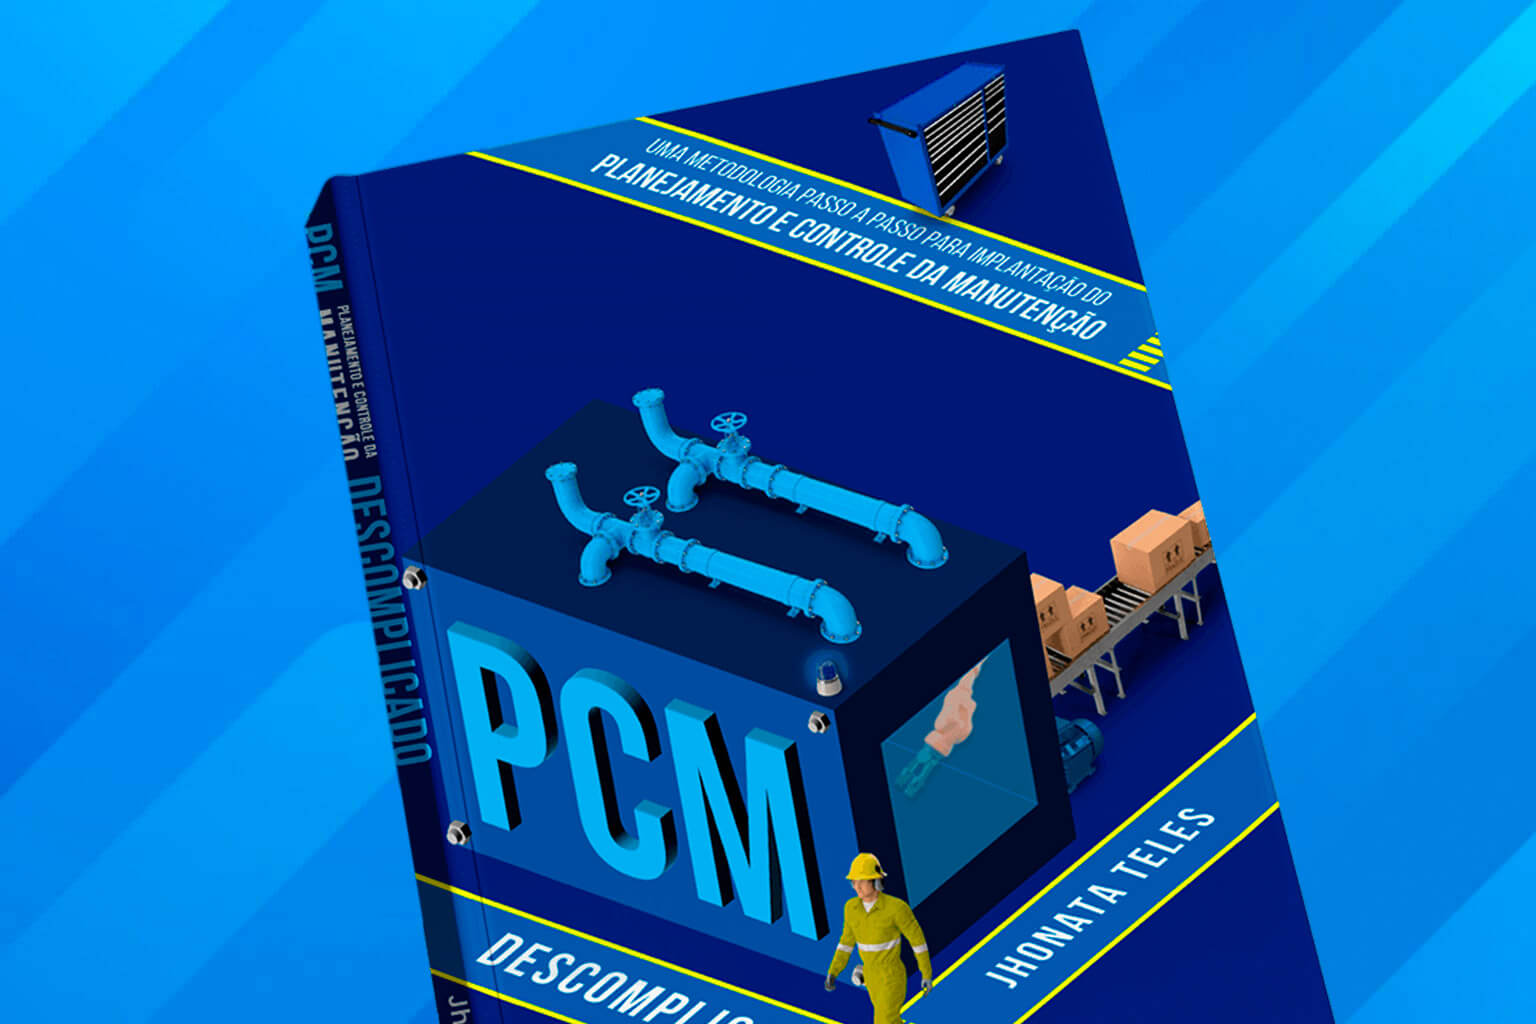 pdfcoffee com livro-pcm-descomplicado-engeteles-4-pdf-free - Manutenção